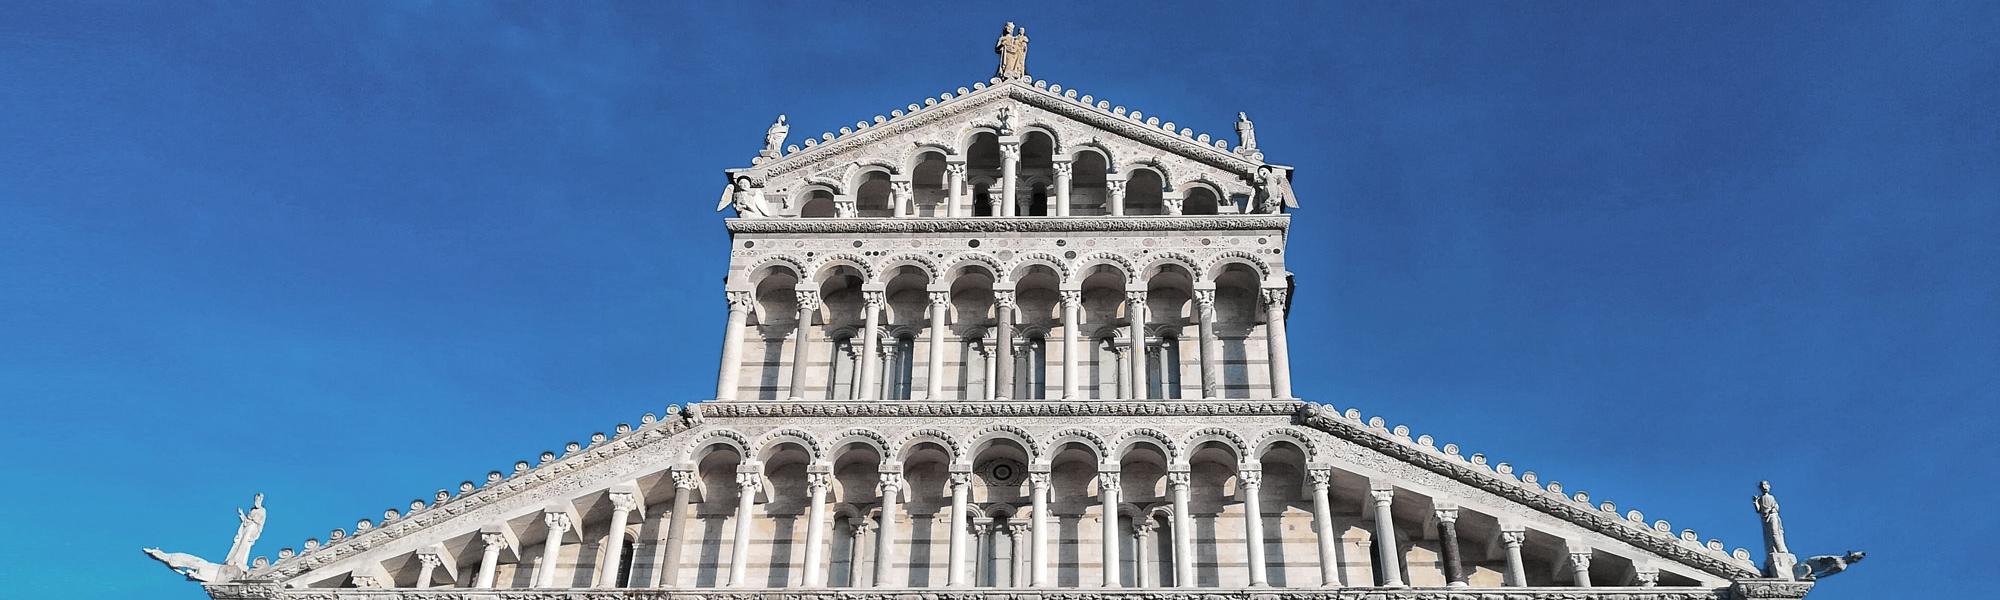 Cattedrale (Duomo) di Pisa - particolare